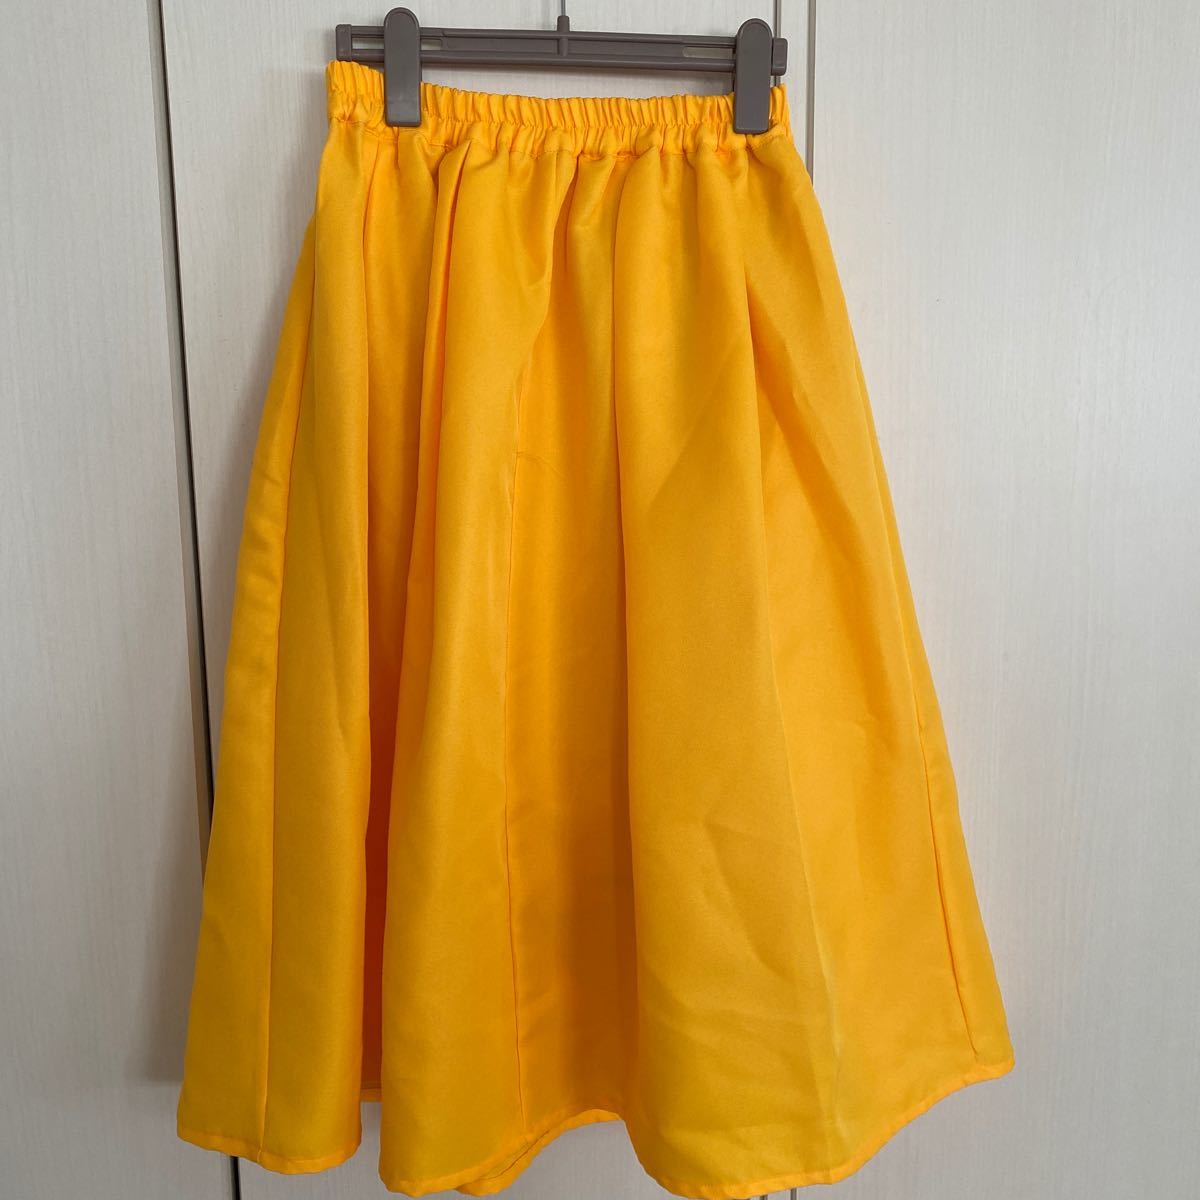 神戸レタスのスカートです。